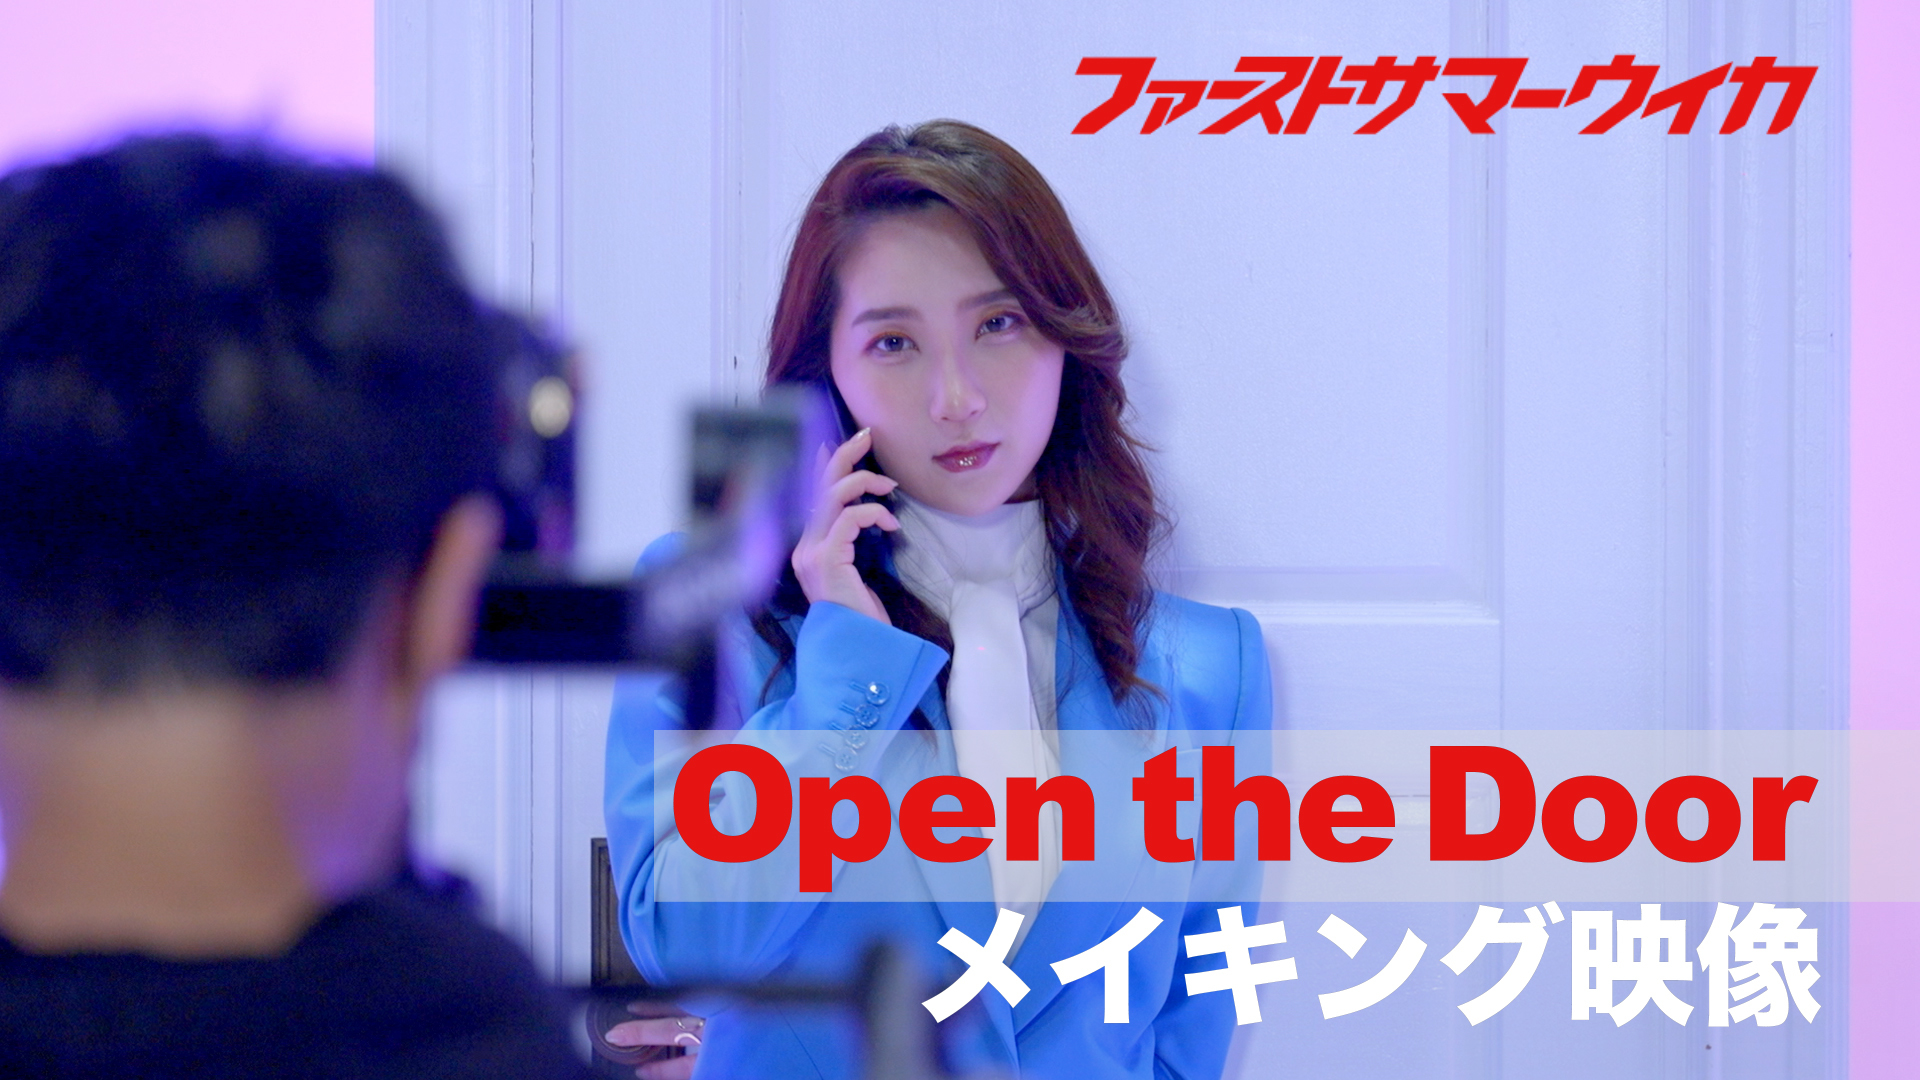 「Open the Door」MVメイキング